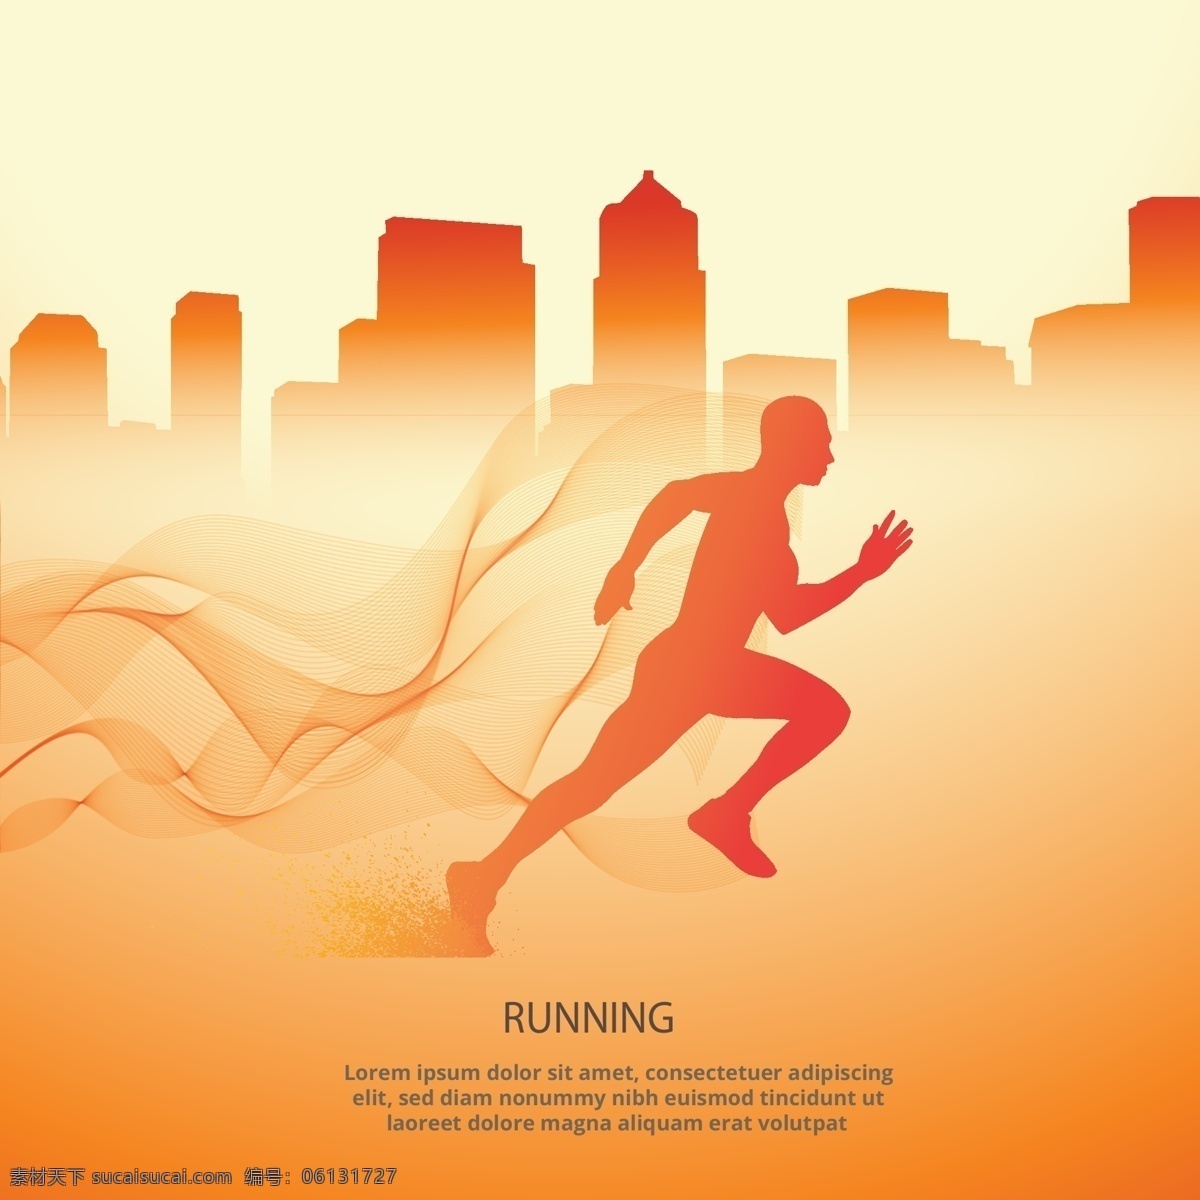 跑步 运动 体育运动 奥运会 田径比赛 慢跑 比赛 运动海报 运动比赛海报 运动员 户外运动 室内运动 运动俱乐部 体育馆海报 卡通设计